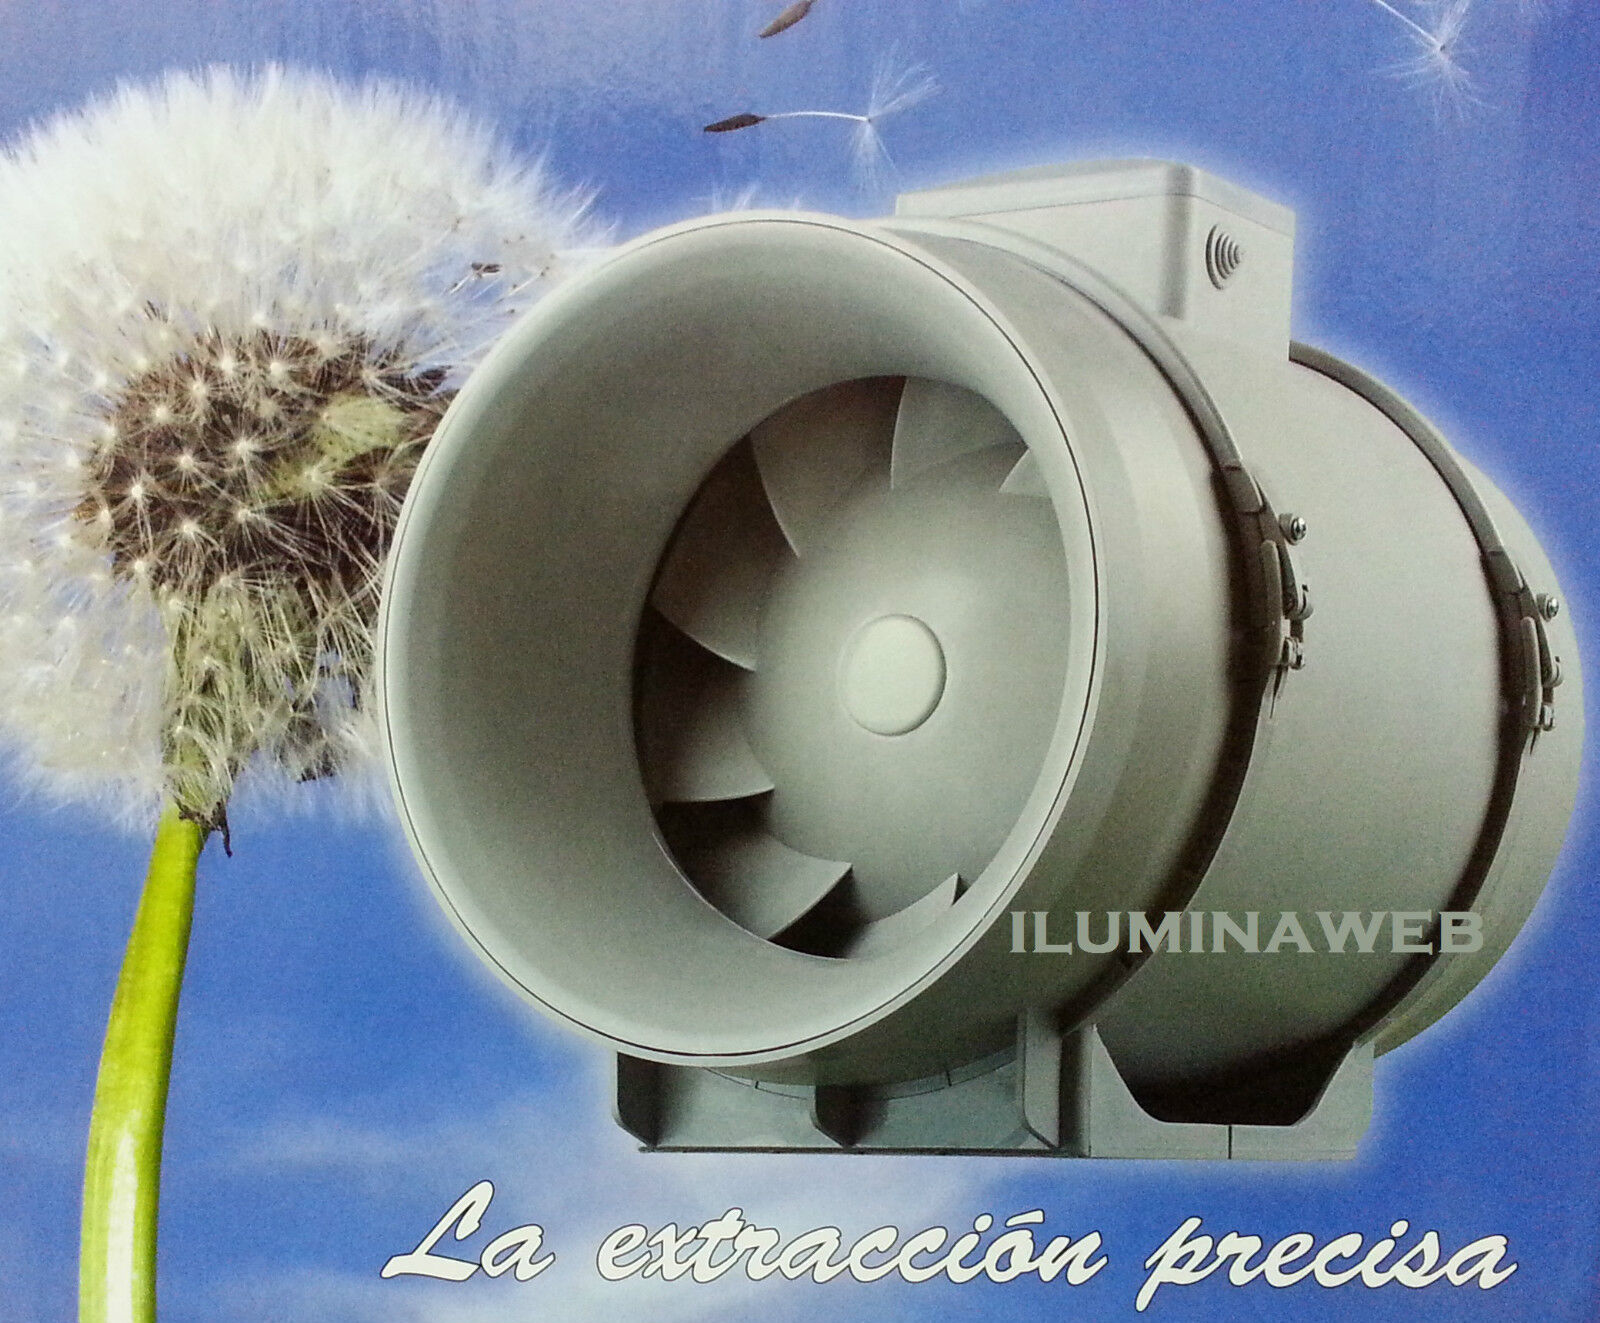 Extractor de aire Tubular TT160 PRO (415/565 m3/h) TT PRO VENTS MIXTO...